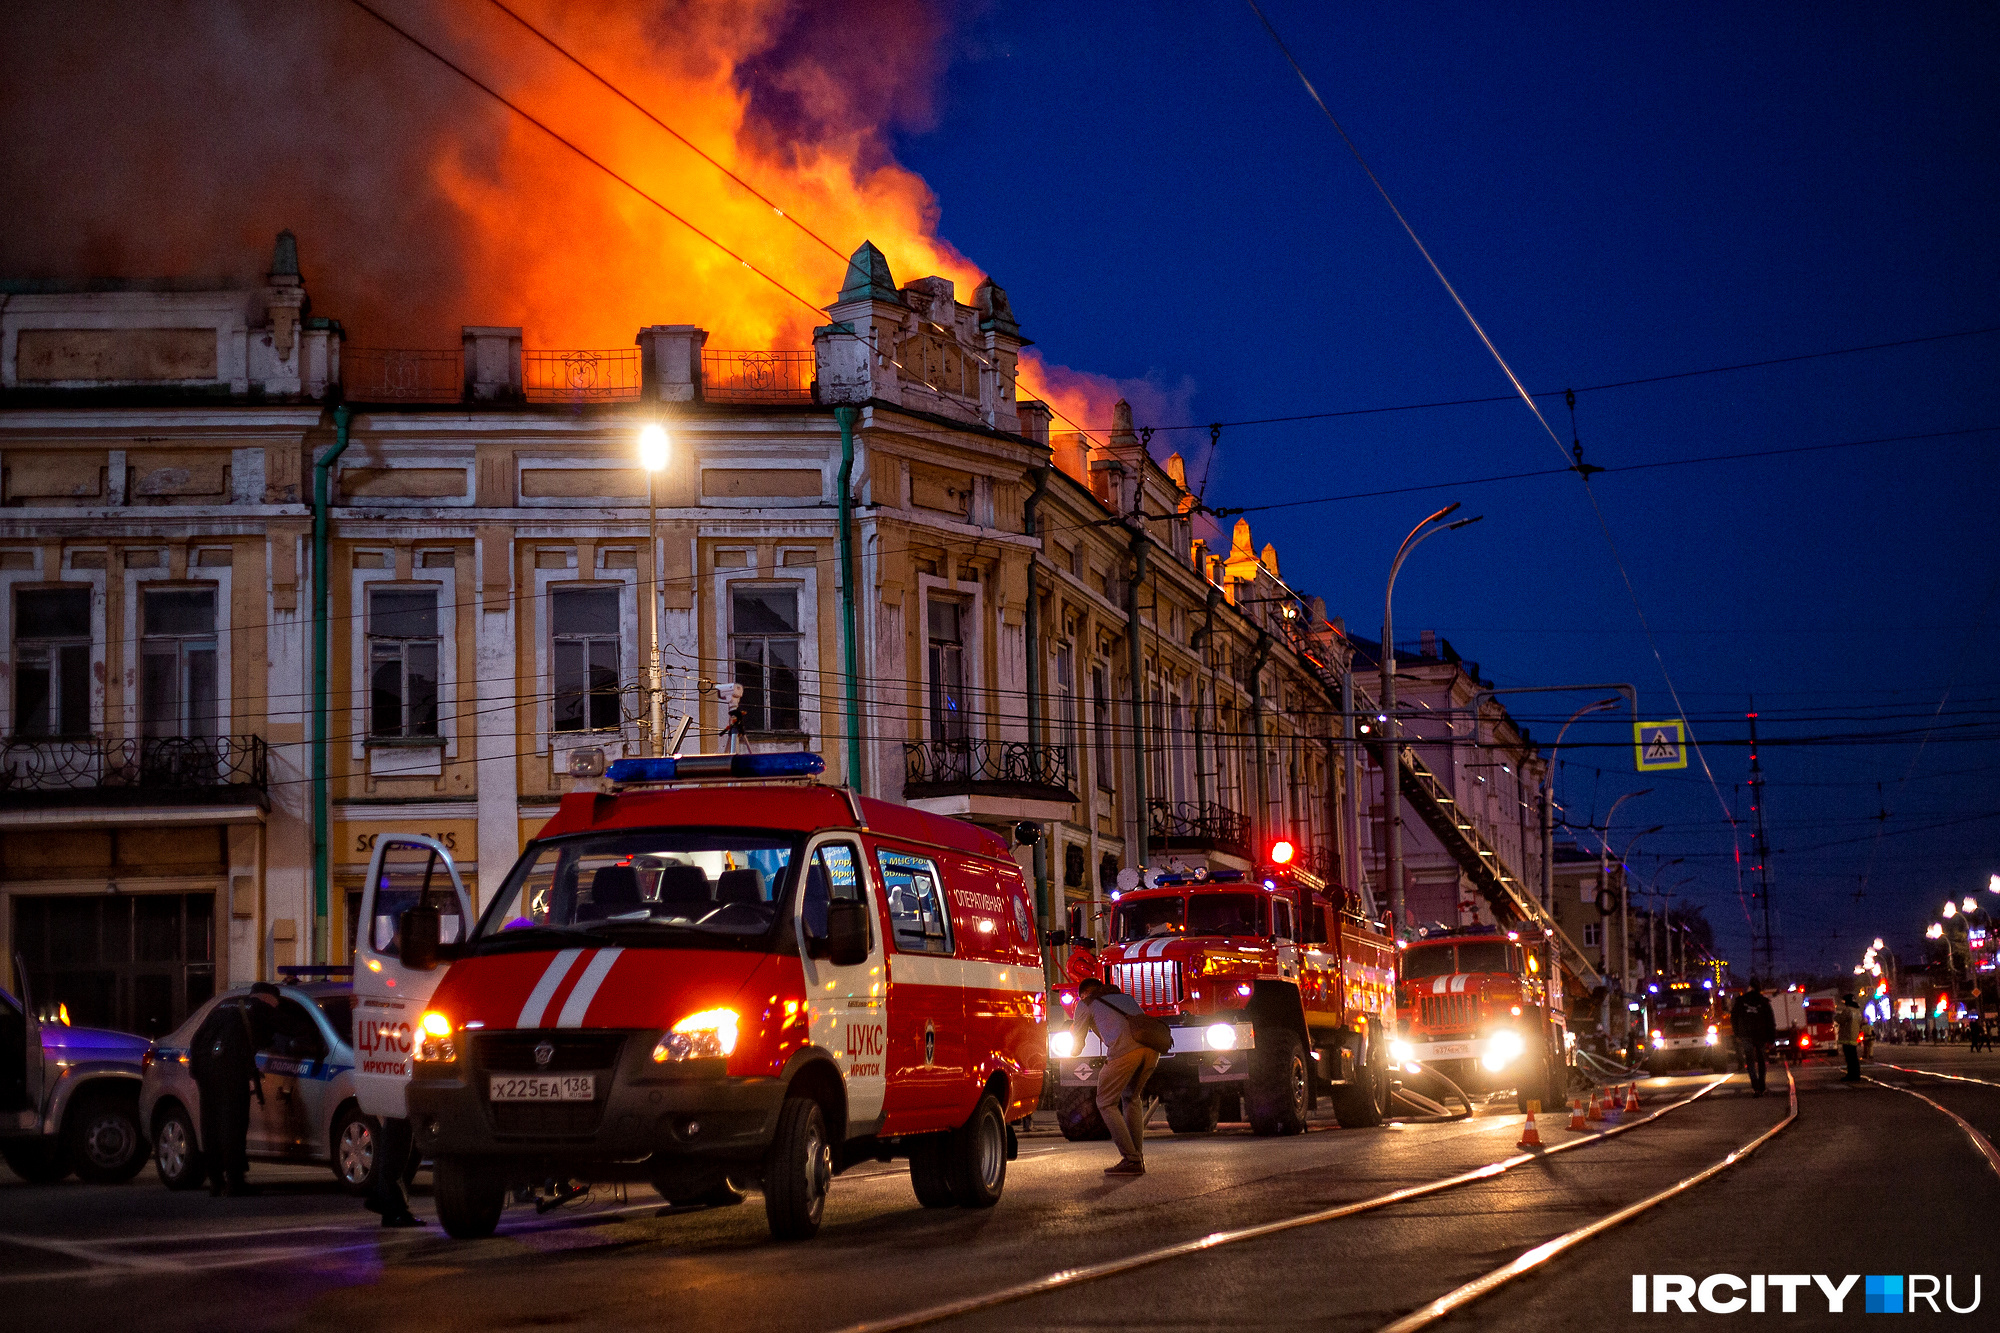 Власти объявили закупку на противоаварийные работы в сгоревшем в Иркутске ТЮЗе